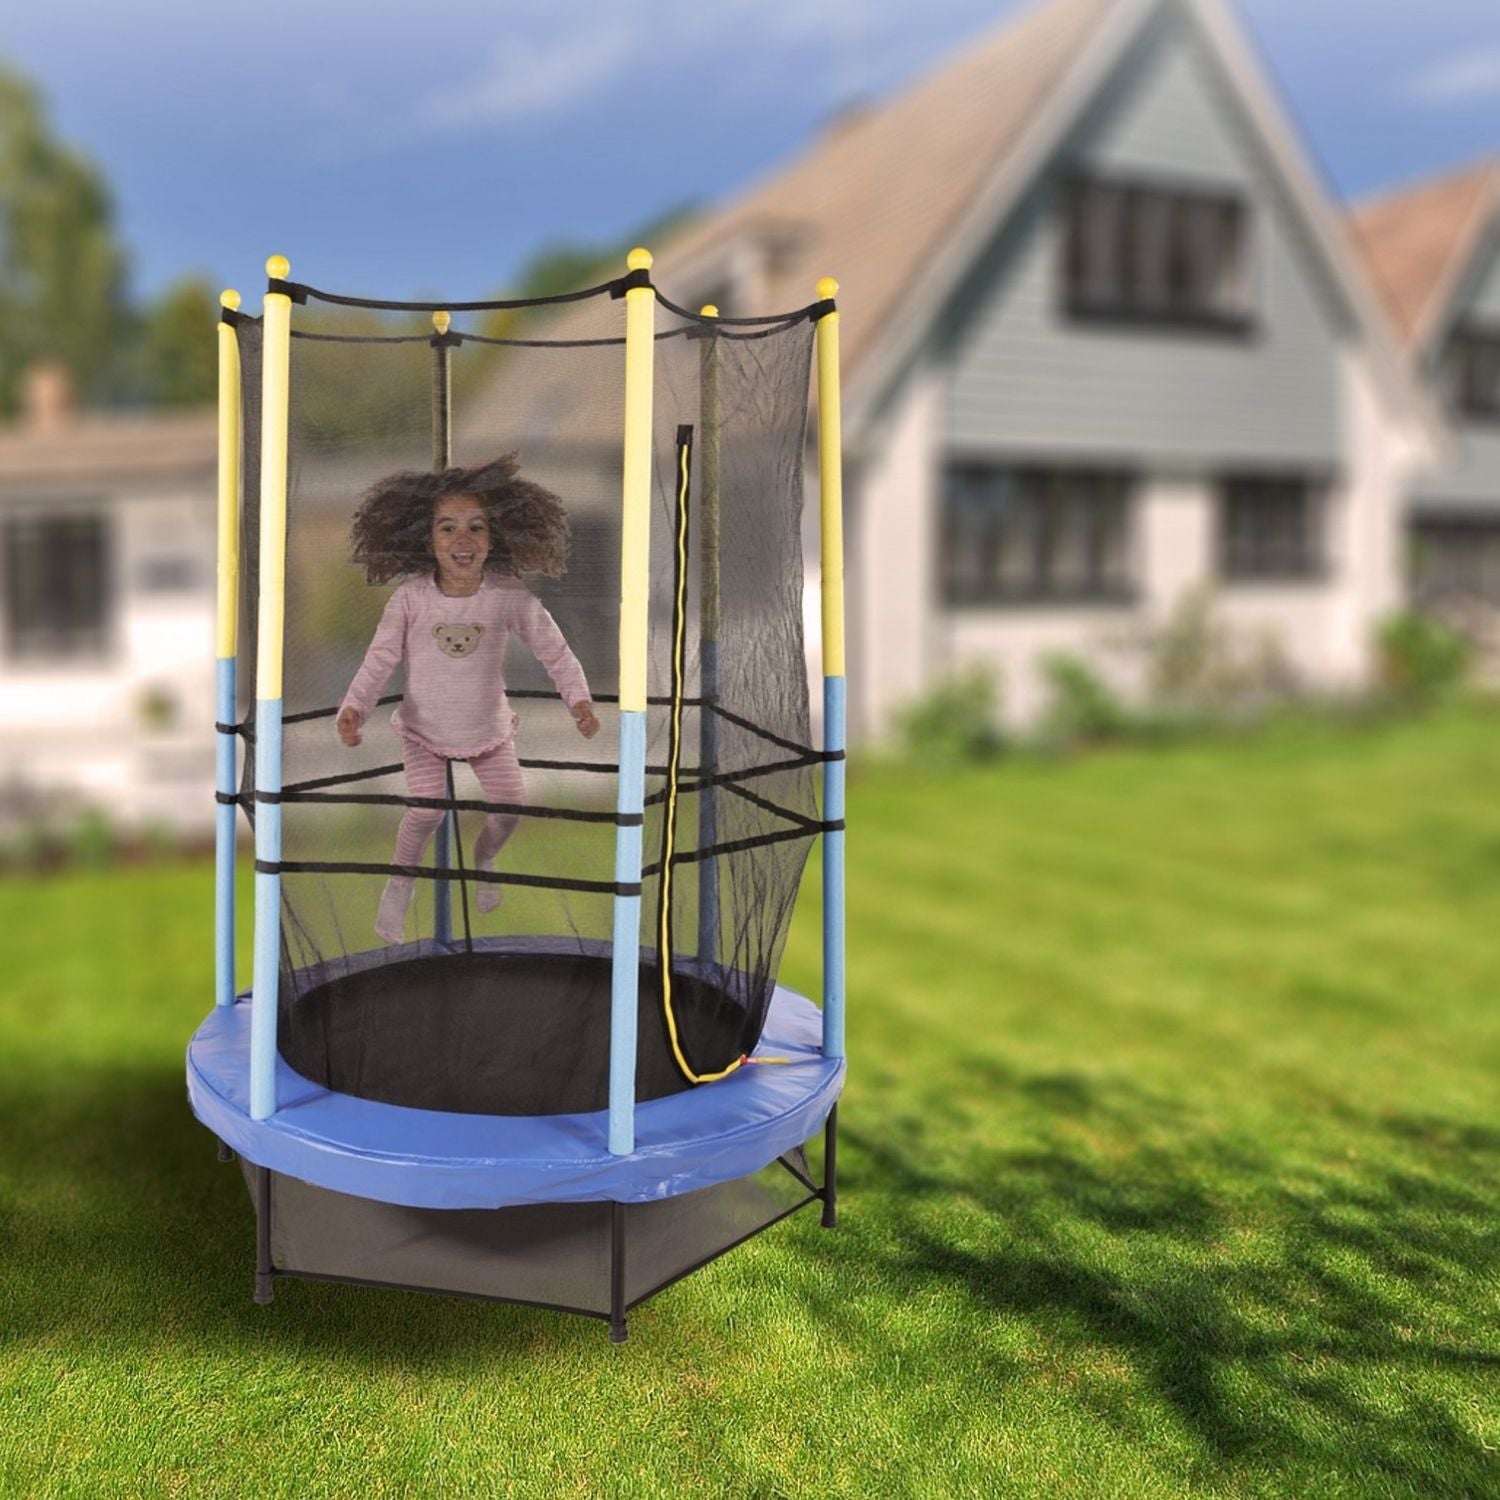 Trampolino per bambini indoor/outdoor 140 cm inclusa rete di sicurezza